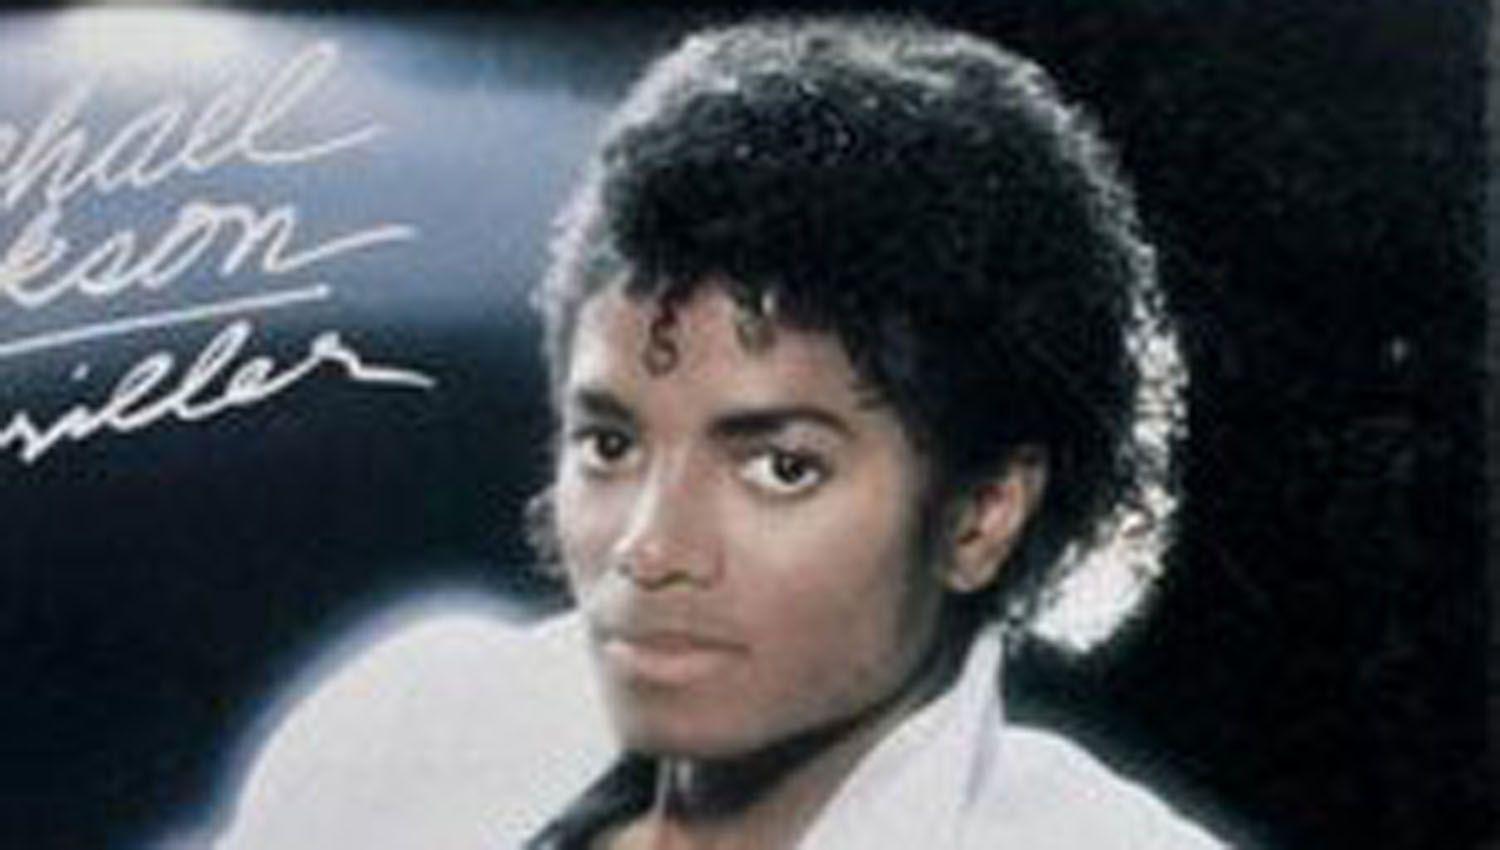 Con la salida de Thriller 40 se agranda la celebracioacuten por el aniversario del disco